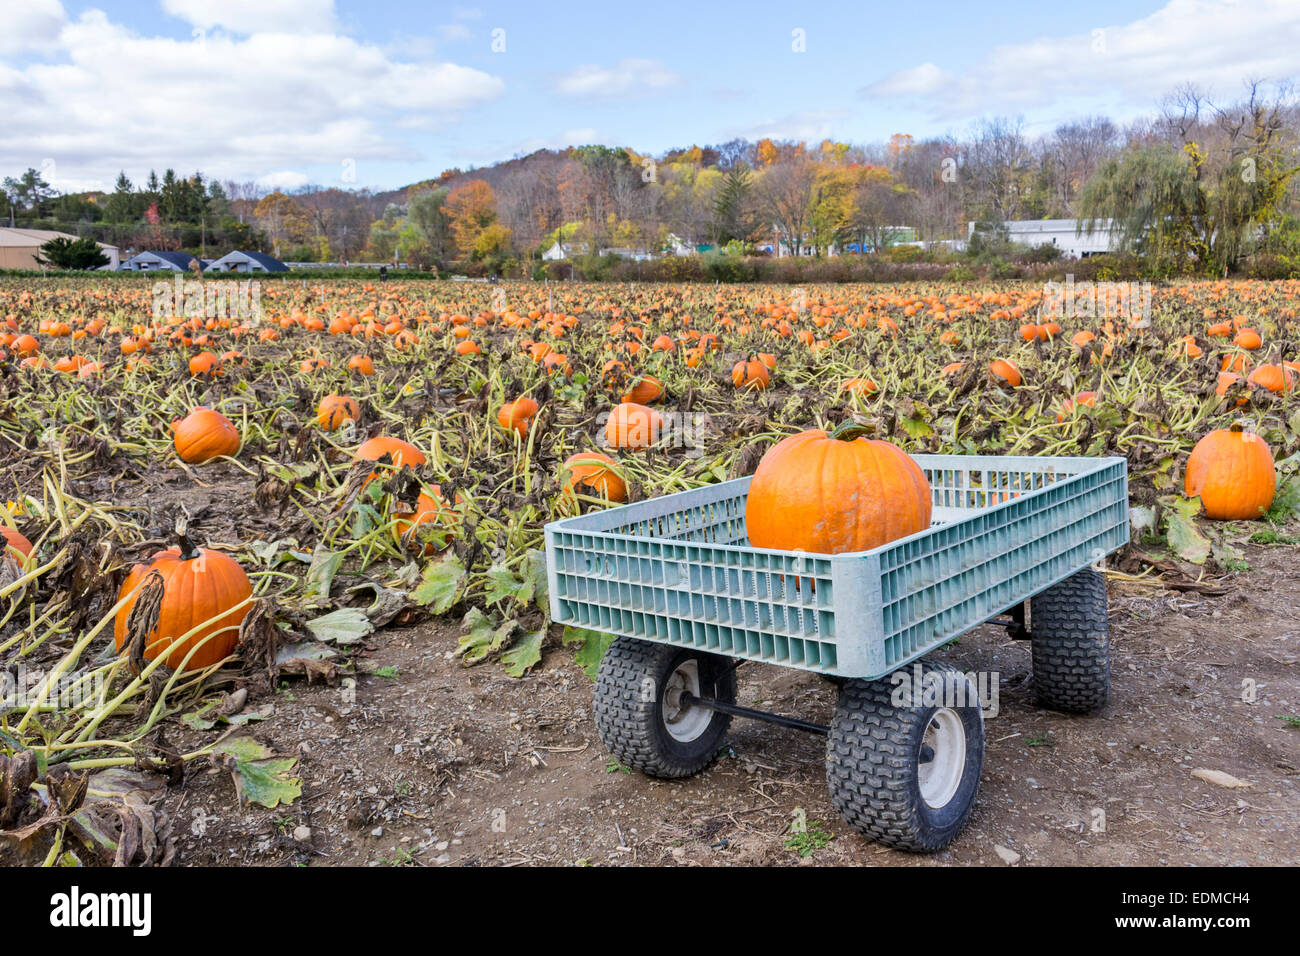 A pumpkin farm and a pumpkin sitting in a wagon. Stock Photo